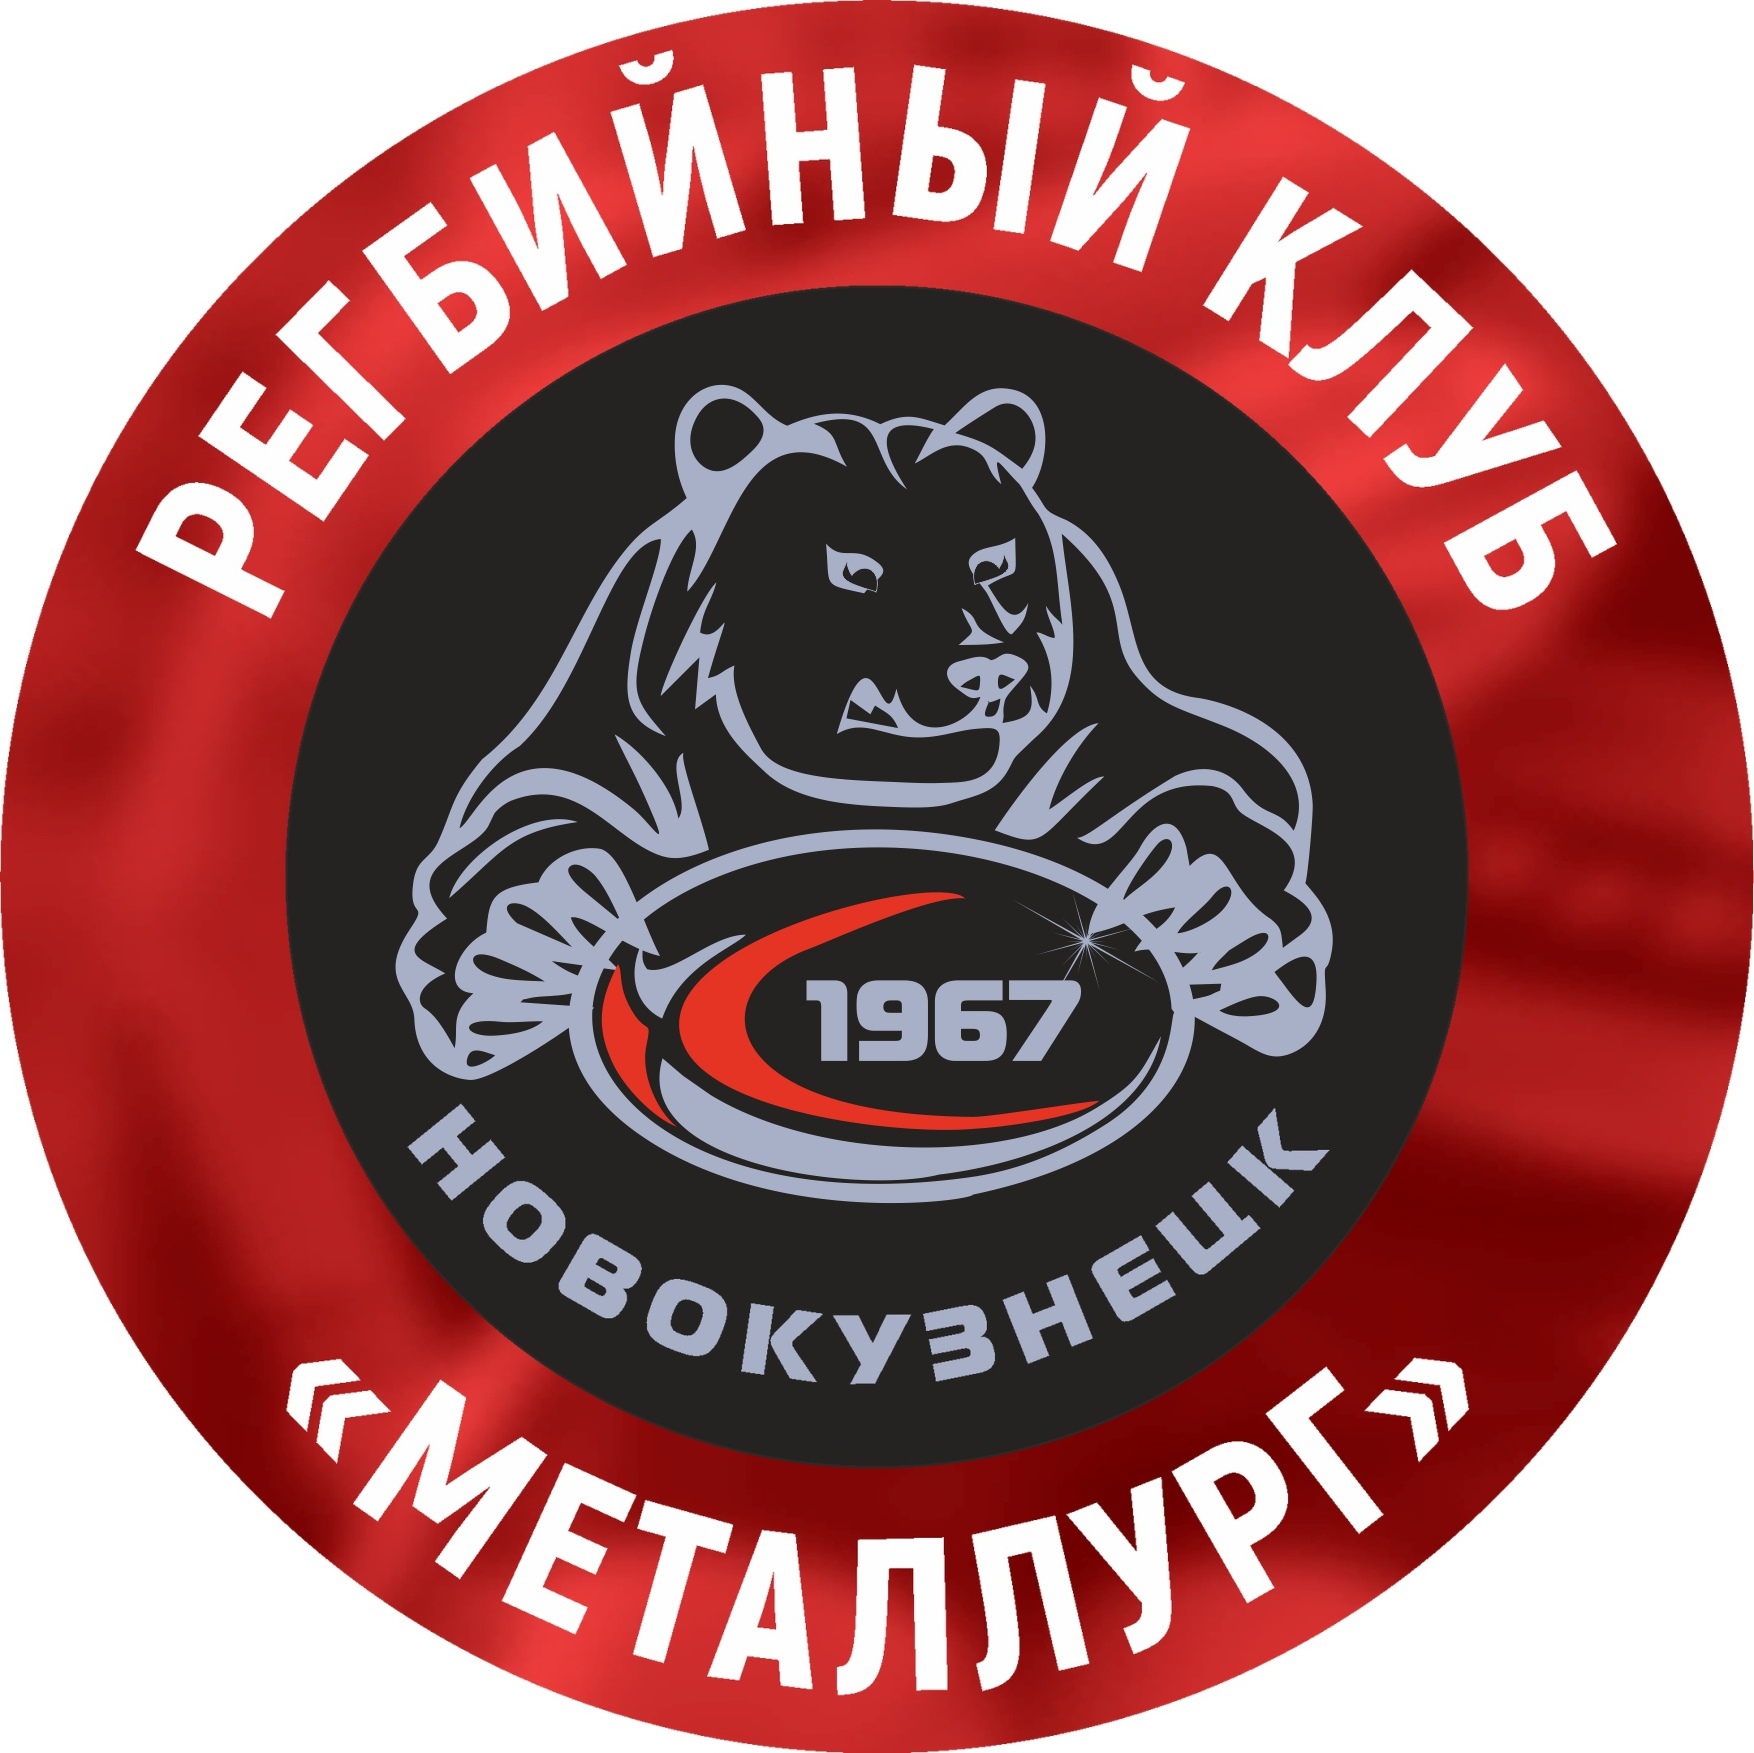 Три регбиста новокузнецкого «Металлурга» вошли в топ-15